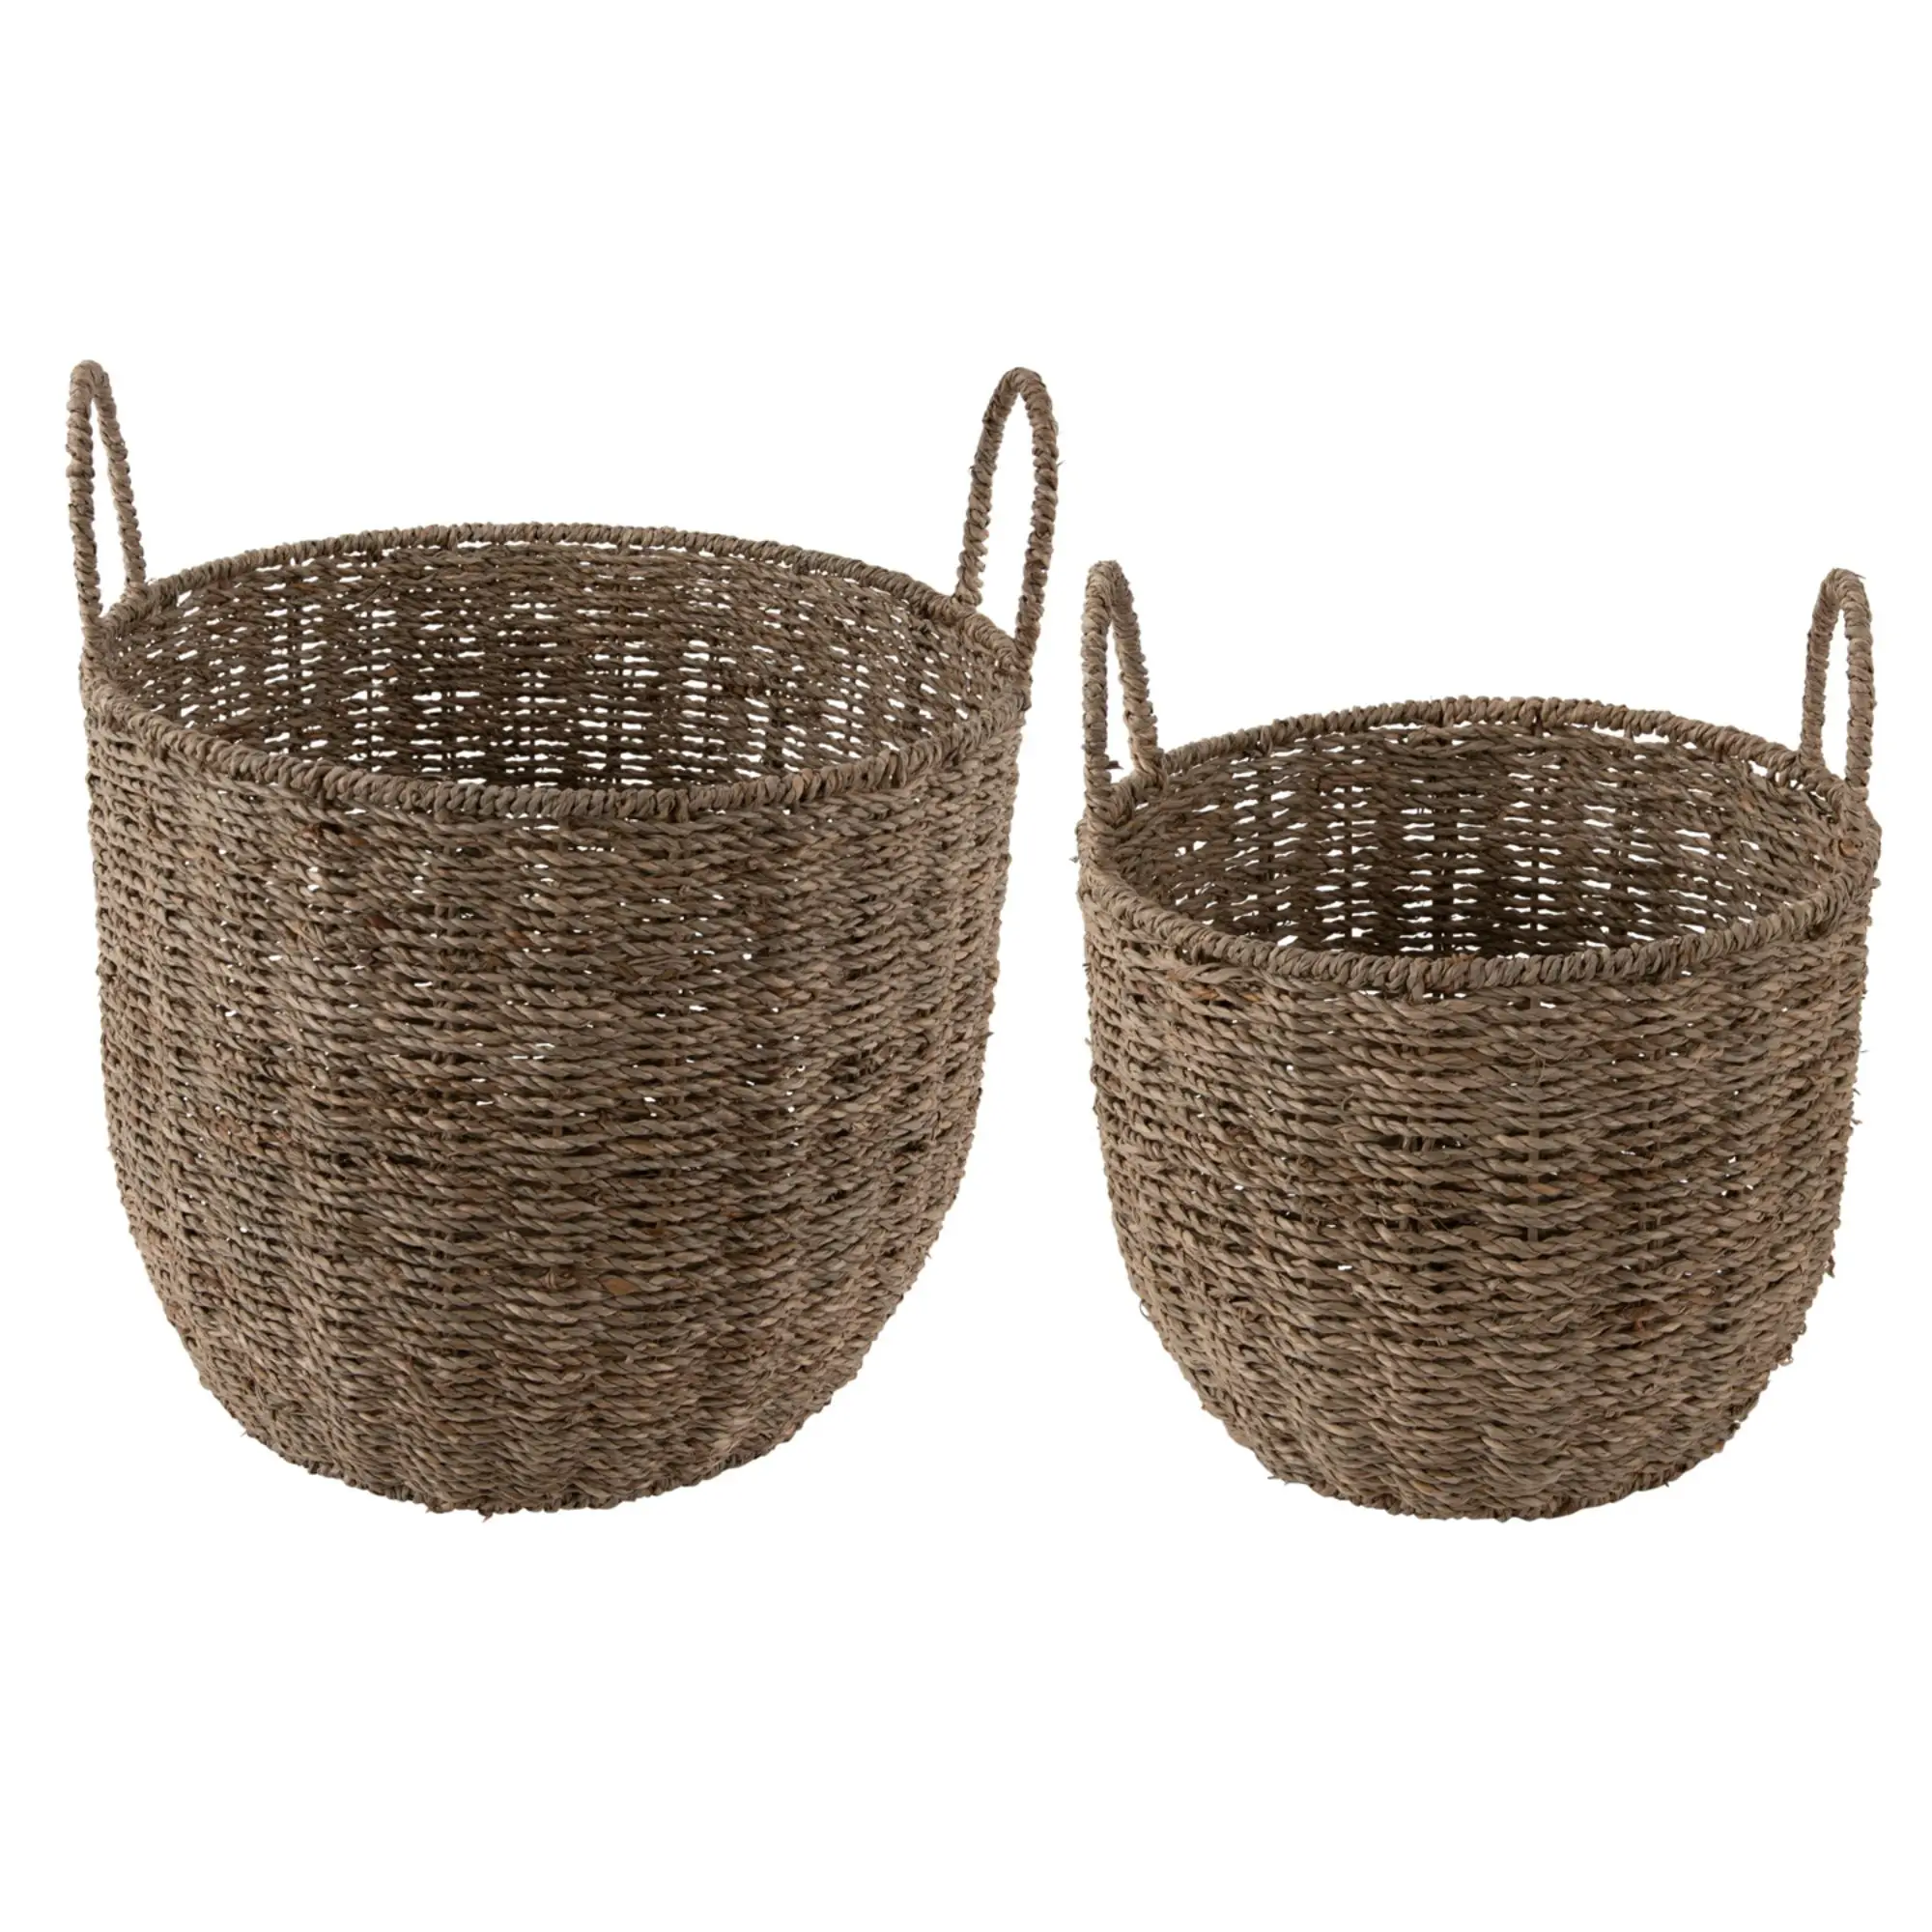 Korb Basket Large Save Set